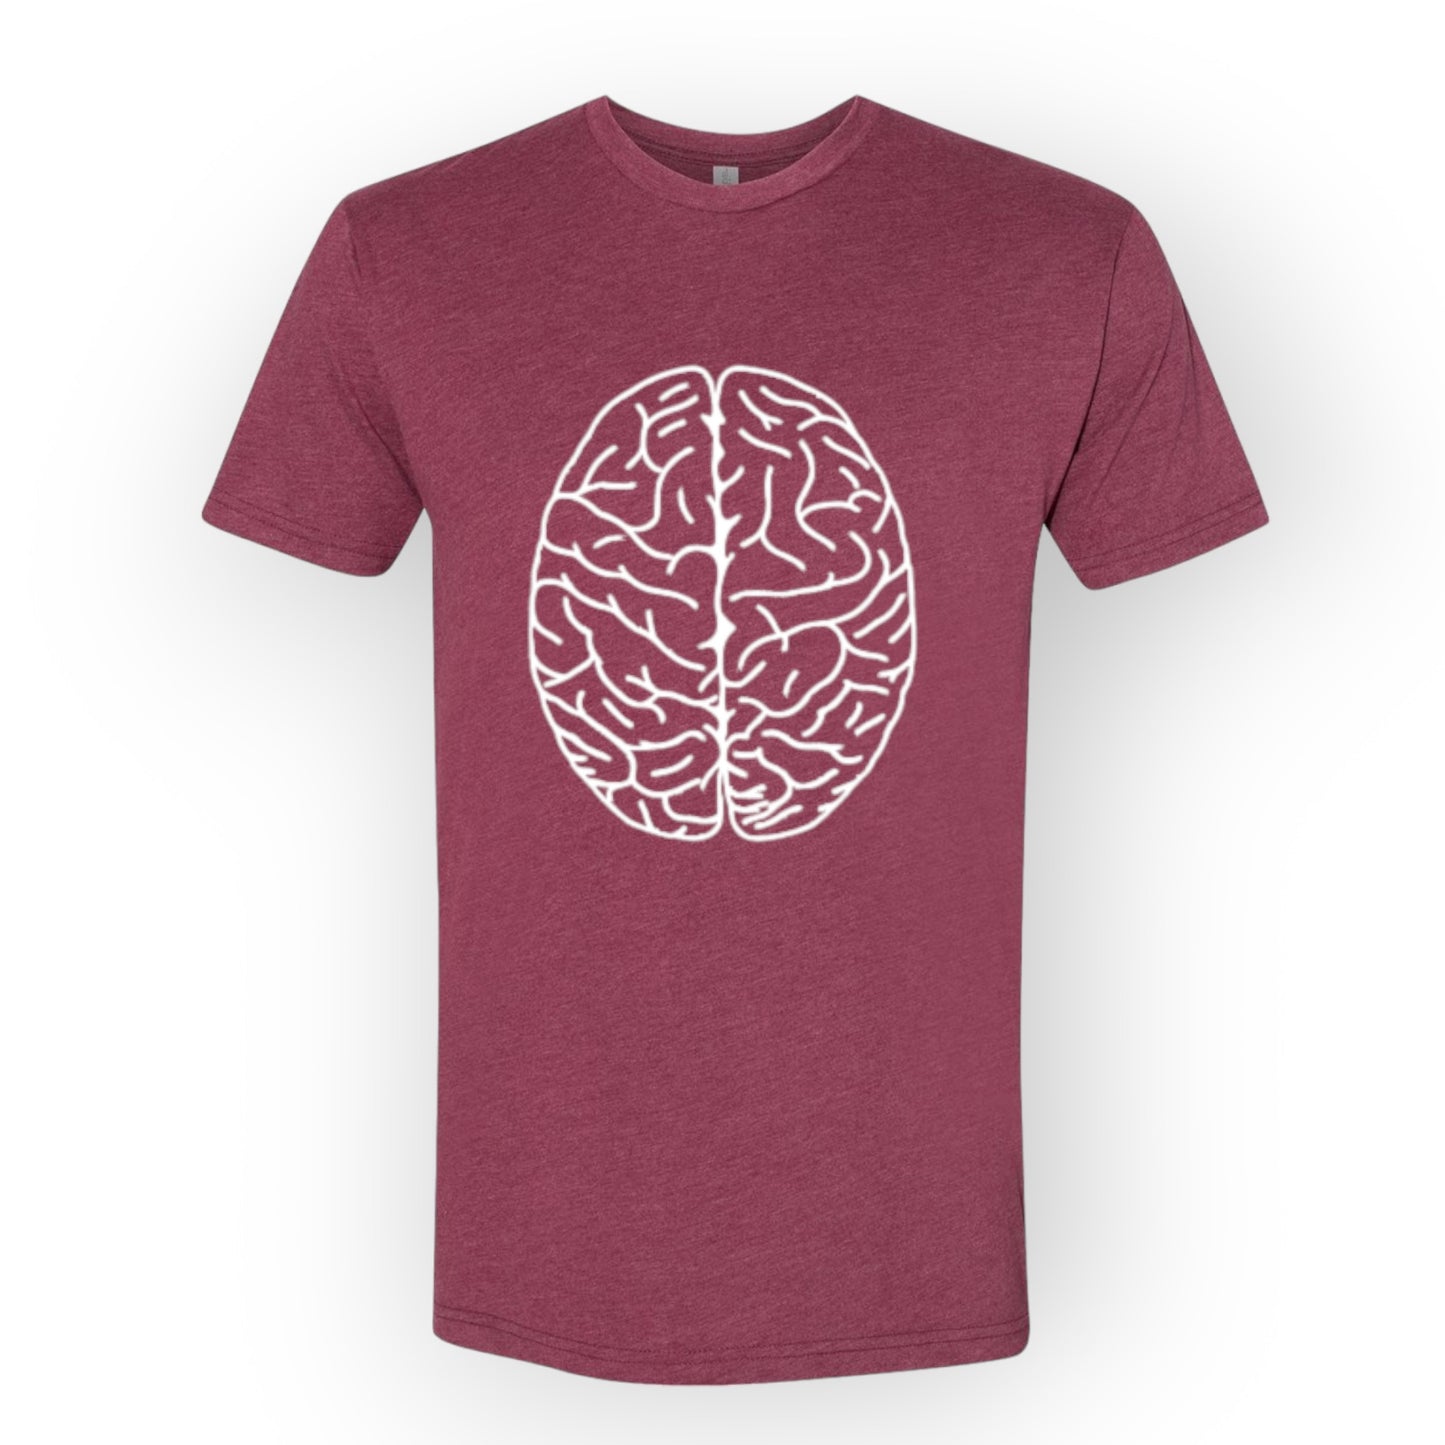 Cerebral hemispheres t-shirt